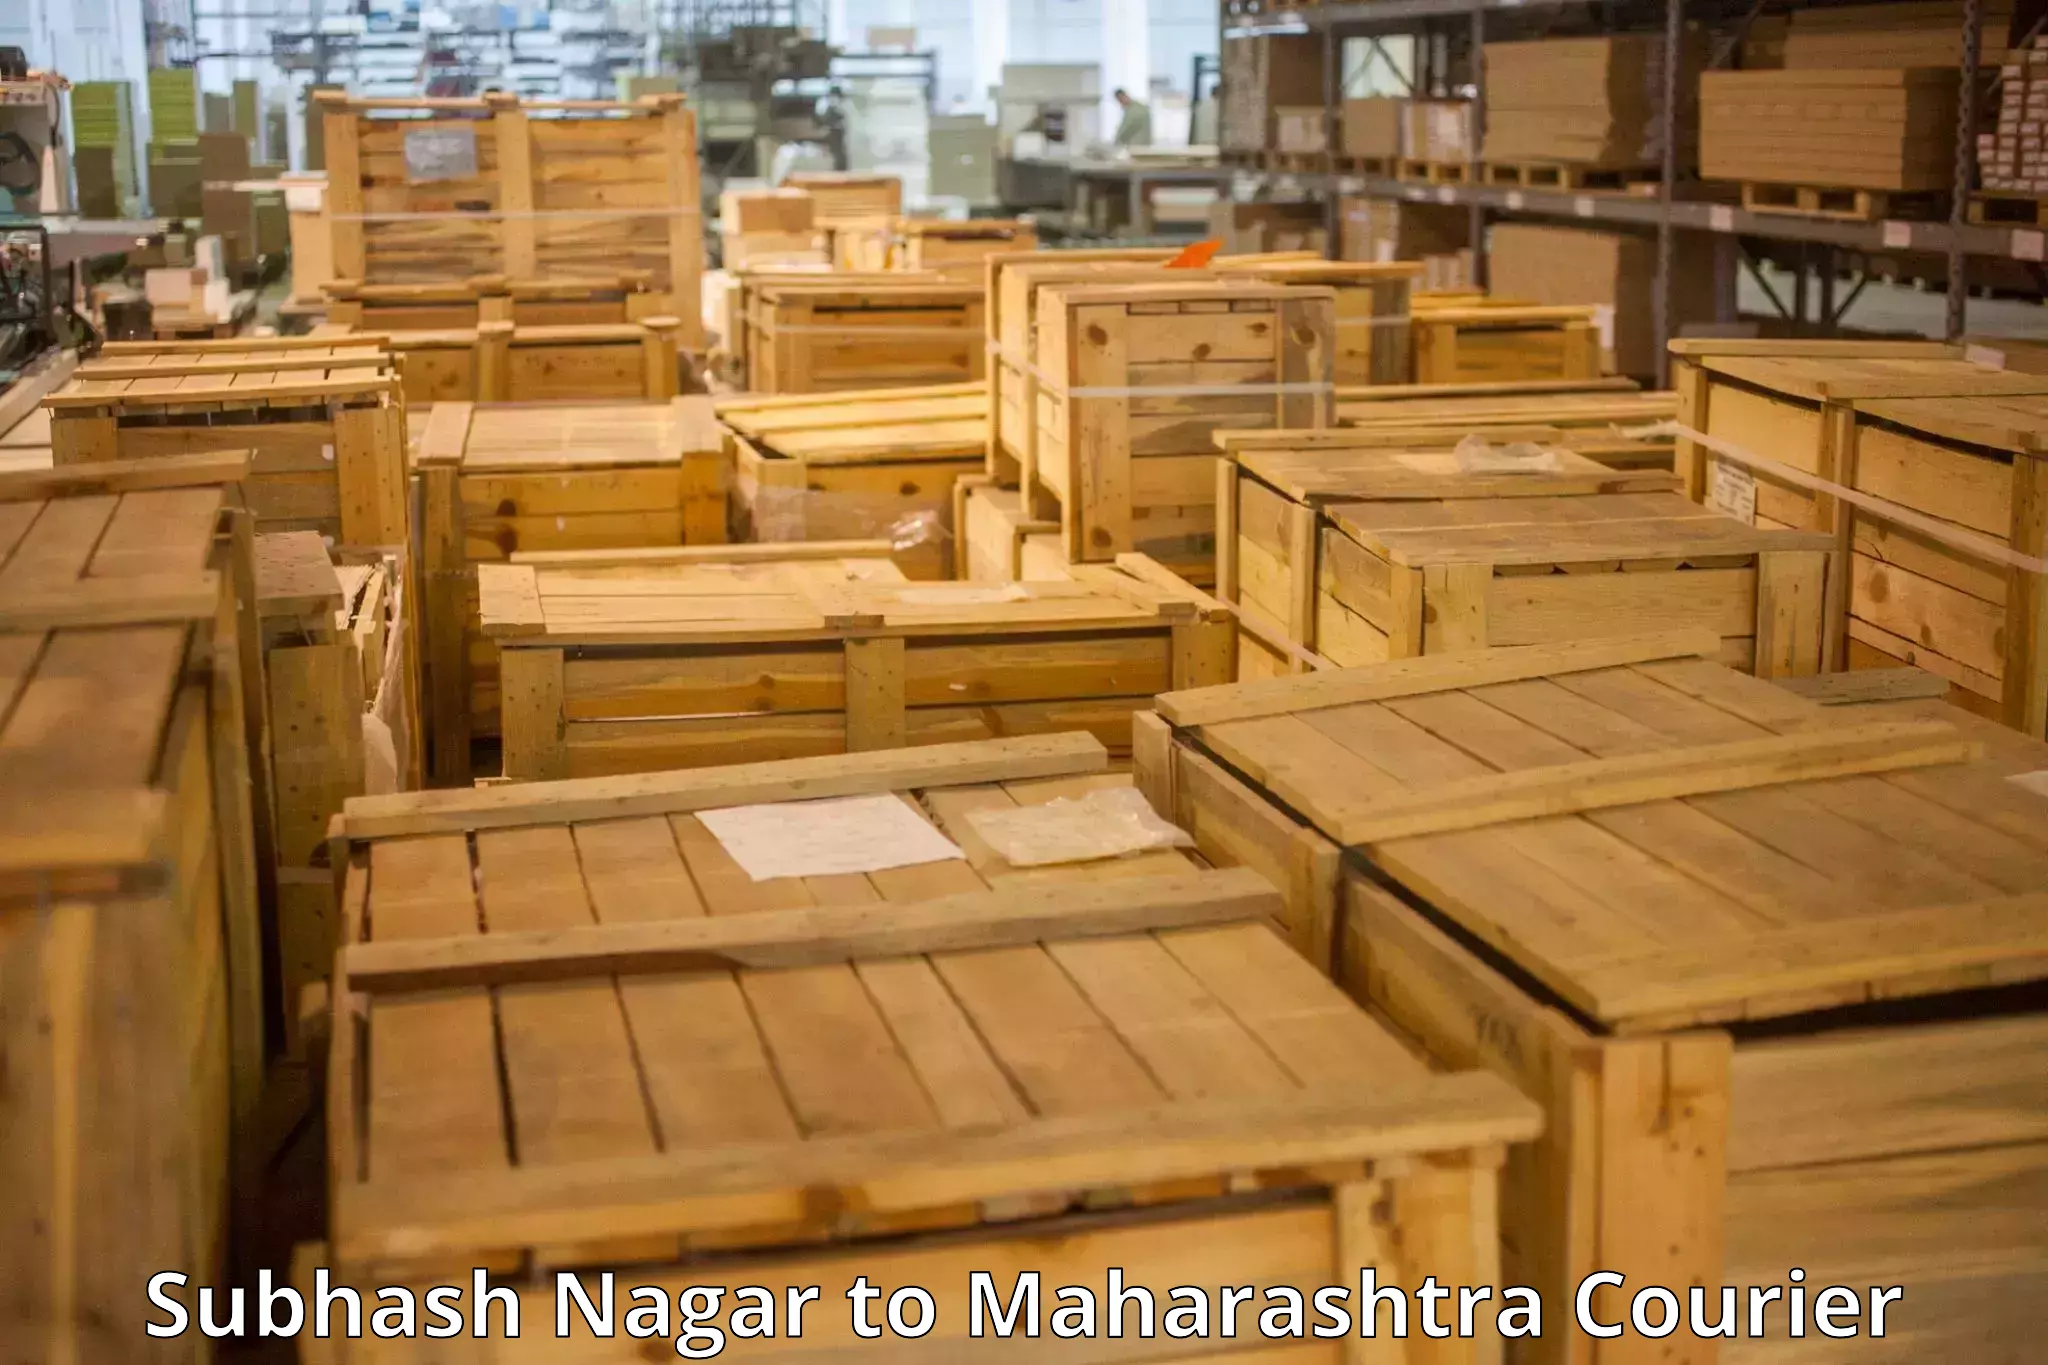 Baggage shipping advice Subhash Nagar to Mahabaleshwar